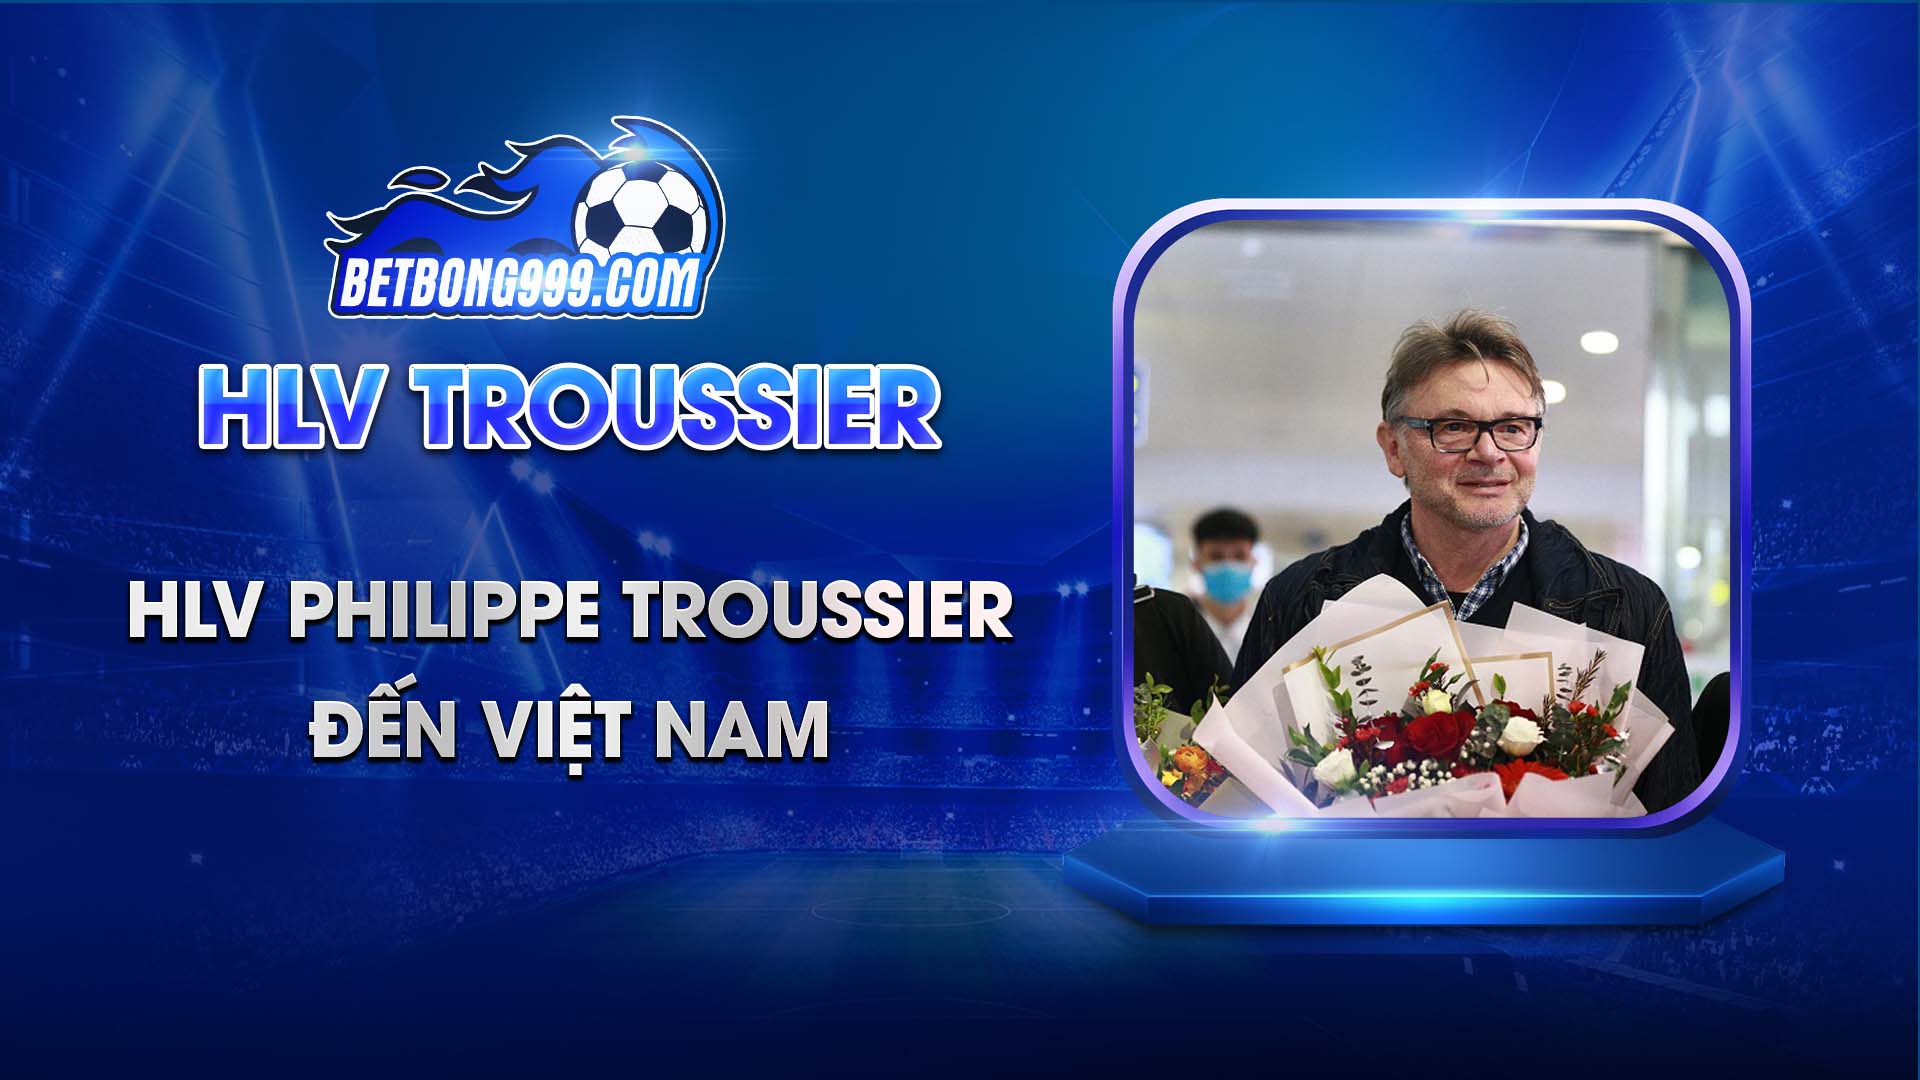 HLV Philippe Troussier đến Việt Nam